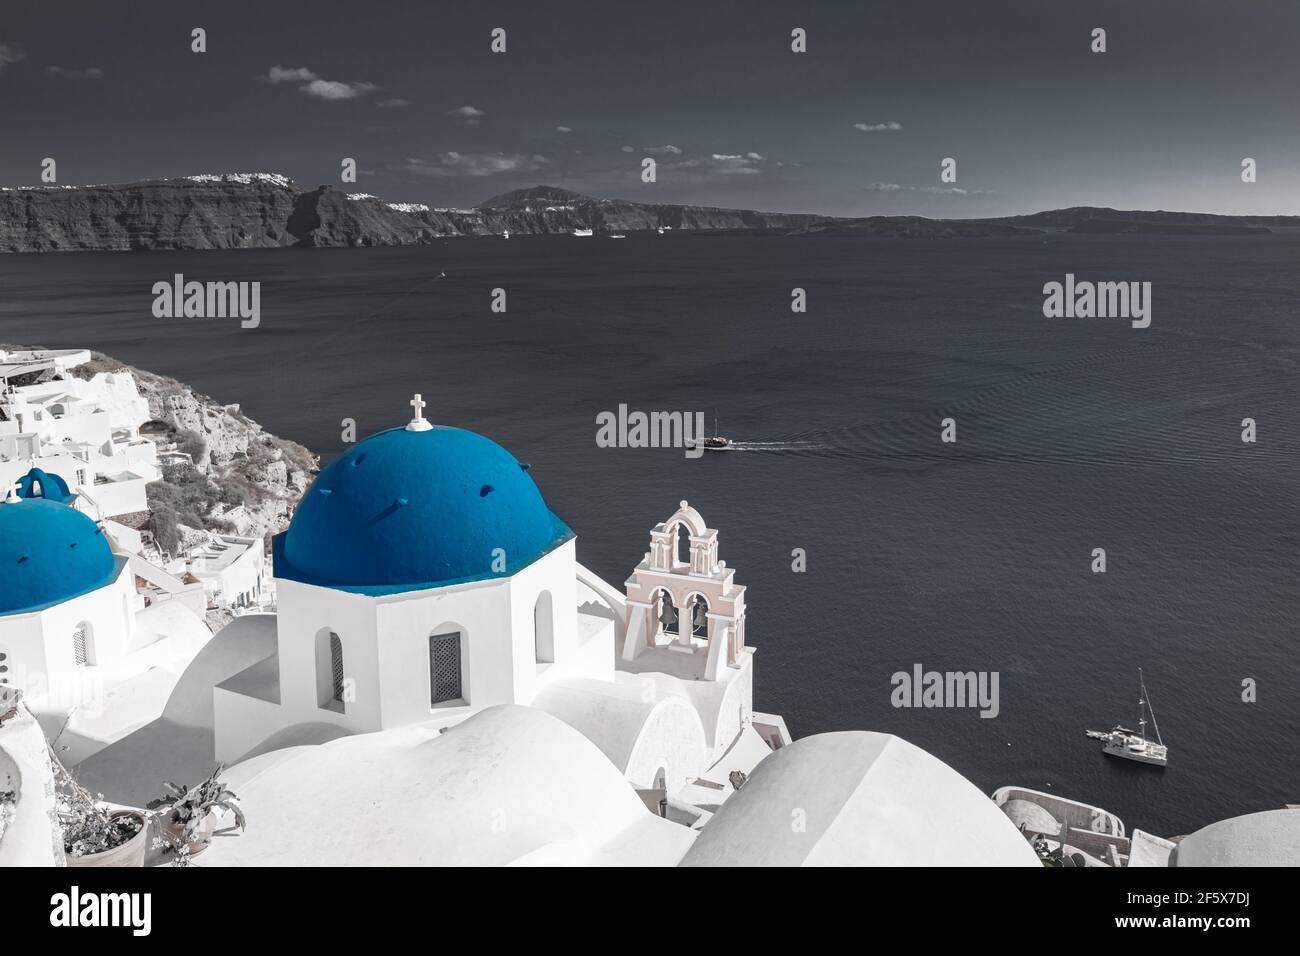 Image couleur sélective, couleur bleue avec processus noir et blanc. Vue sur Oia à Santorin, caldera et dôme bleu de l'église. Voyage idyllique et inspirant Banque D'Images